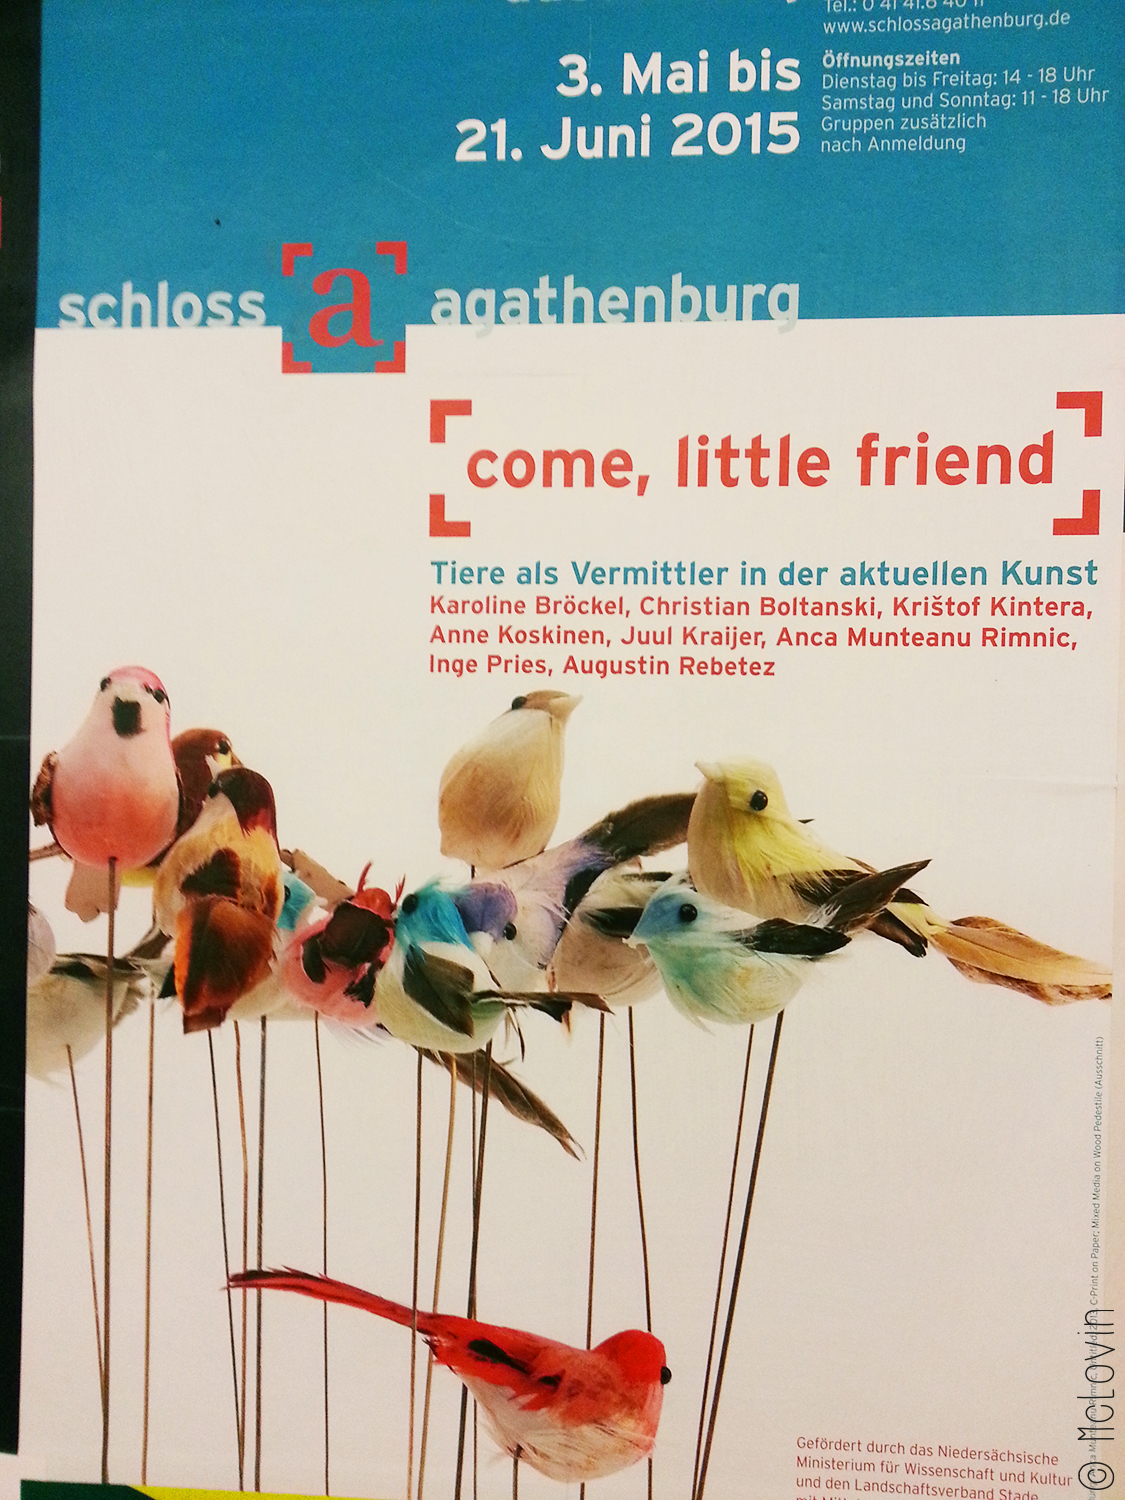 L'affiche de l'exposition "Come, little friend" au château d'Agathenburg